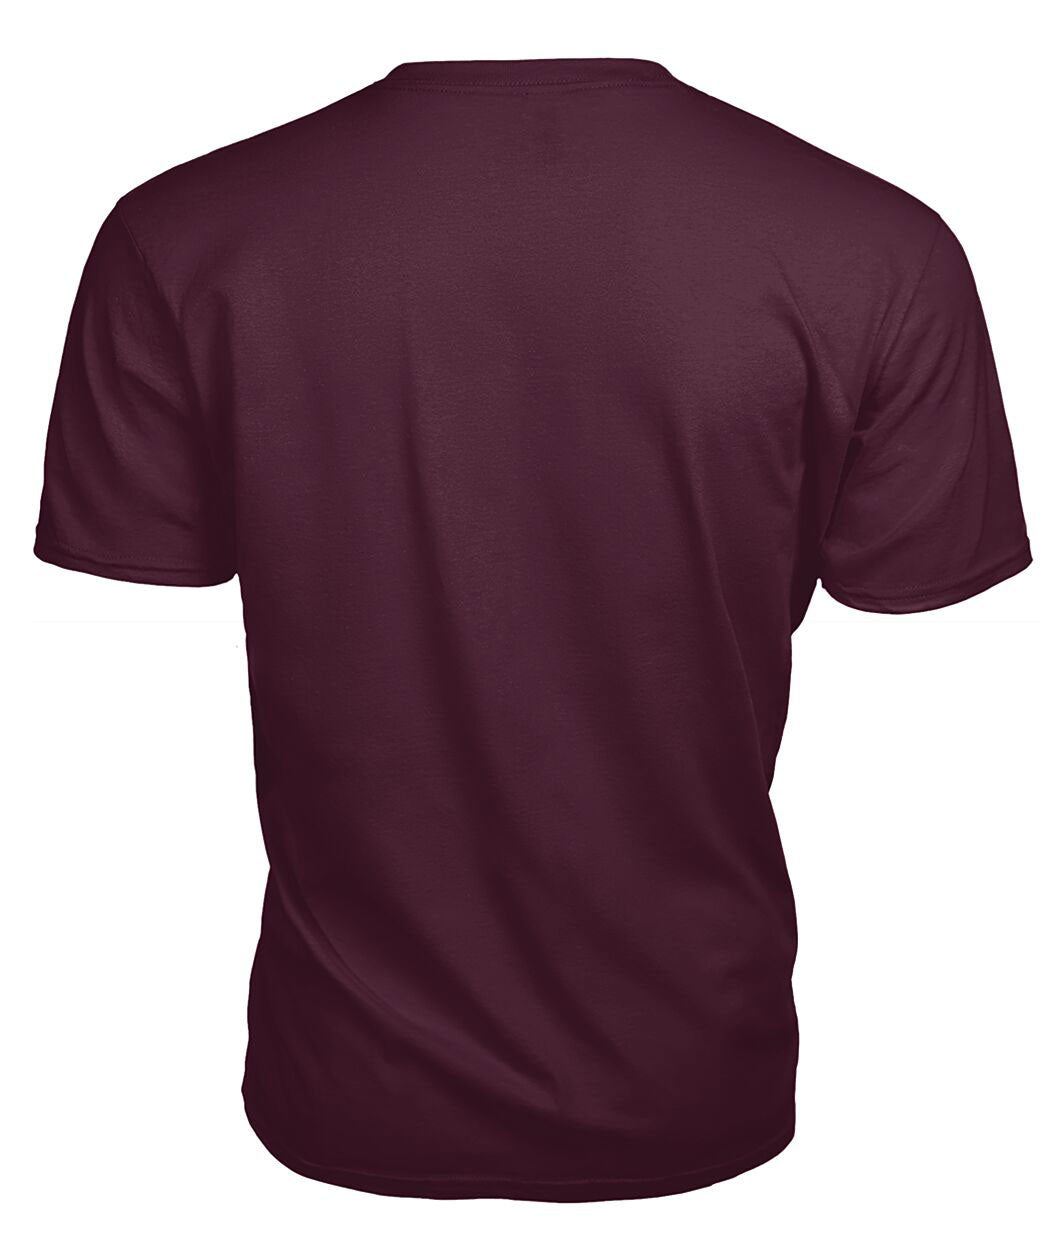 Logan Ancient Tartan Crest 2D T-shirt - Blood Runs Through My Veins Style